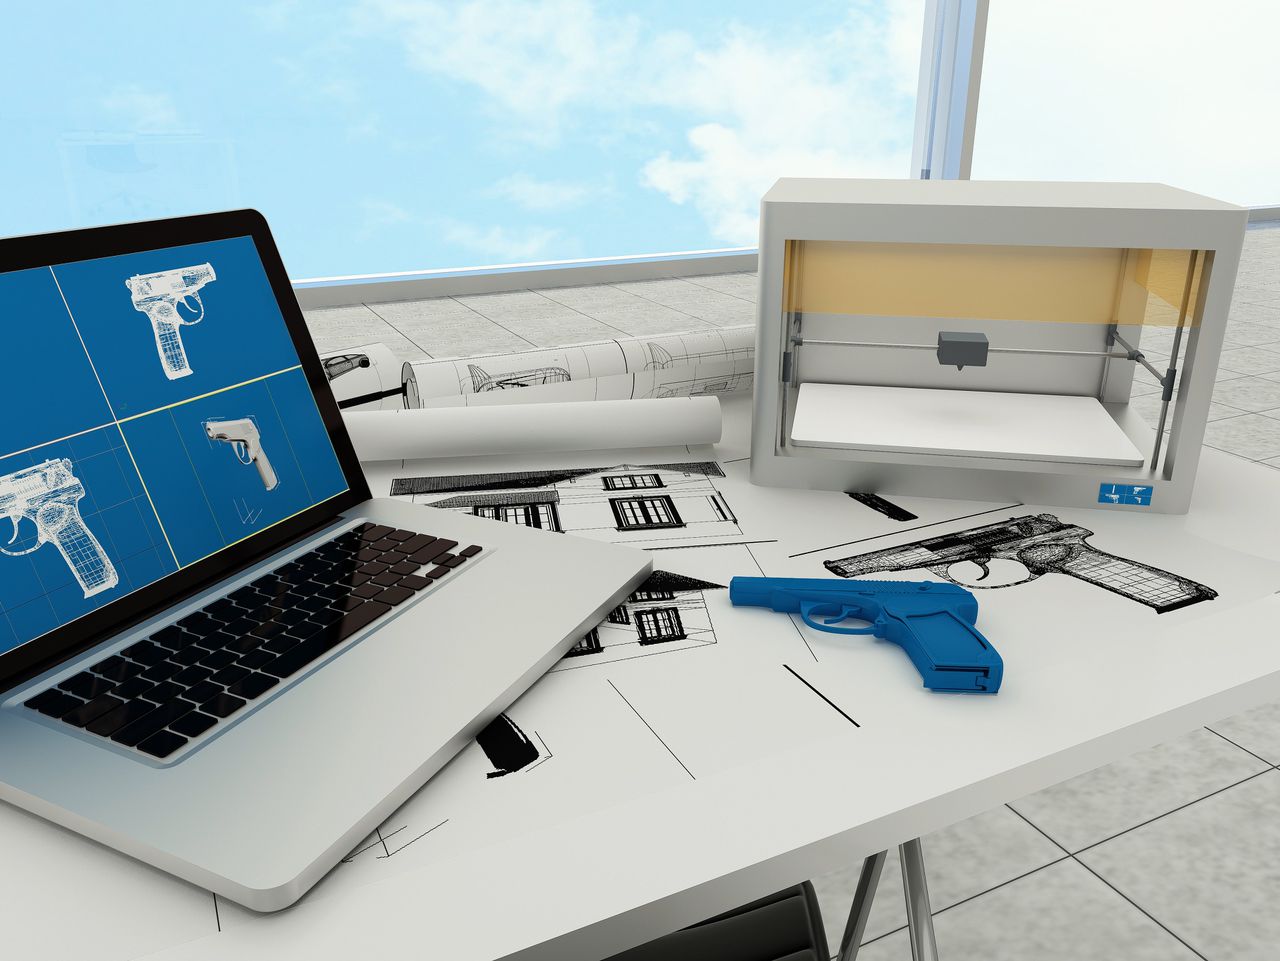 Blauwdrukken 3D-geprinte vuurwapens toch online verschenen 